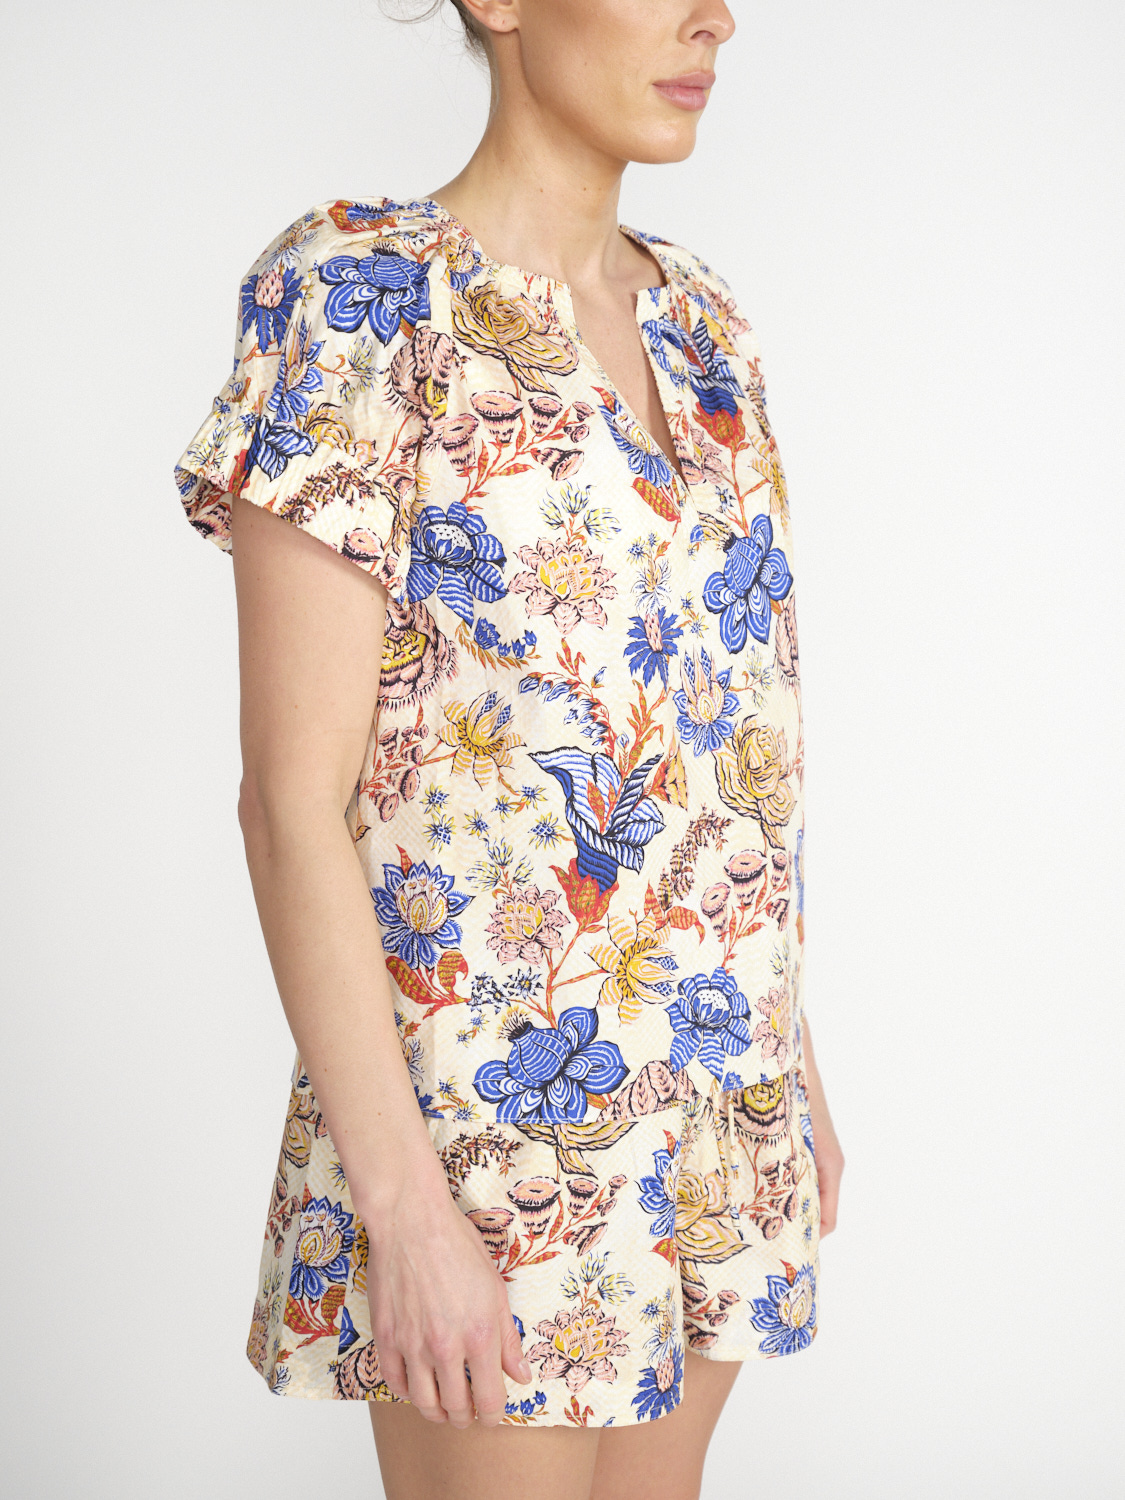 Ulla Johnson Naomi – Baumwoll-Bluse mit Blumen-Design   mehrfarbig 34